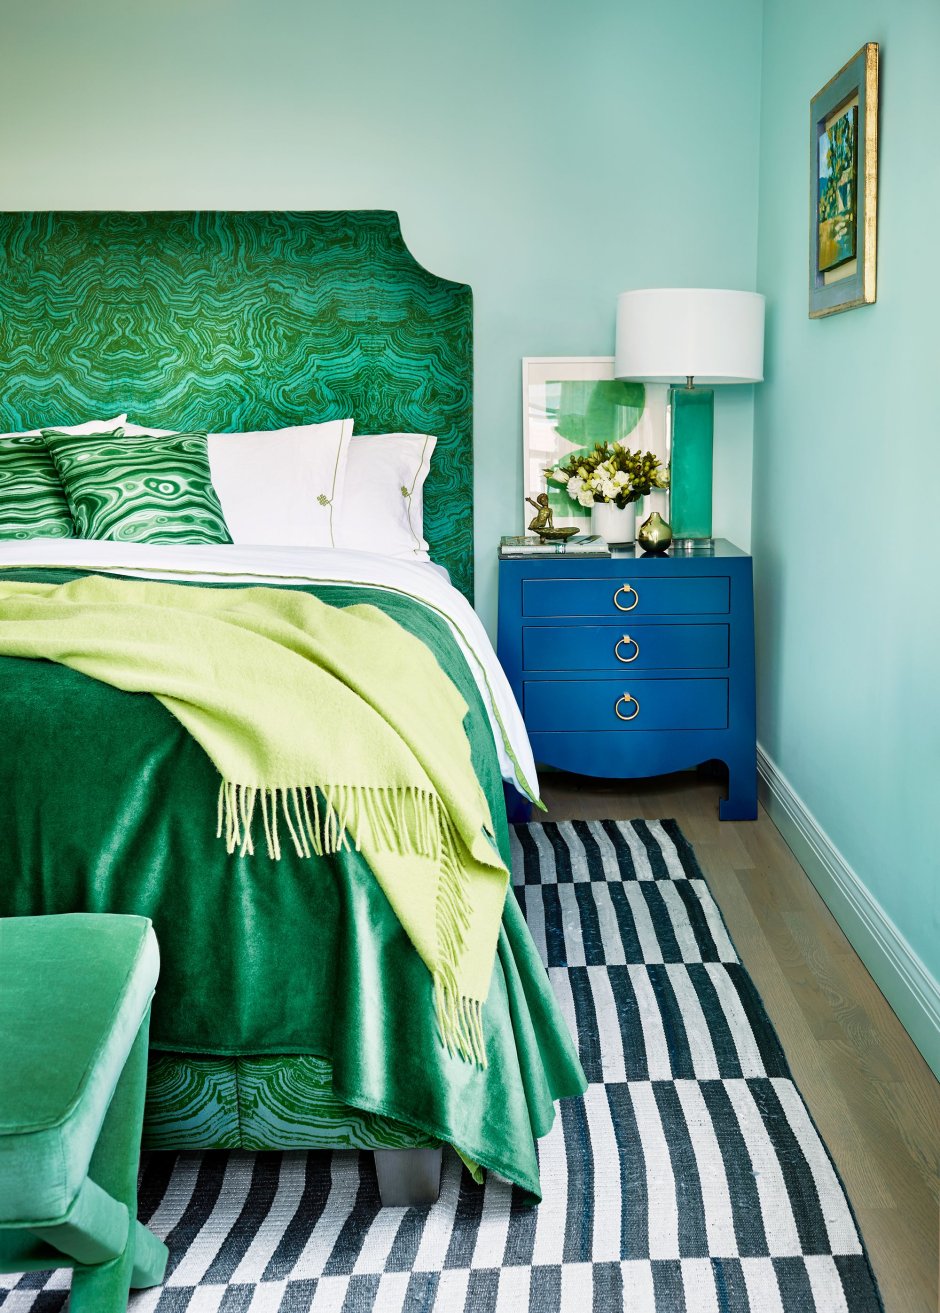 Спальня в зеленых тонах